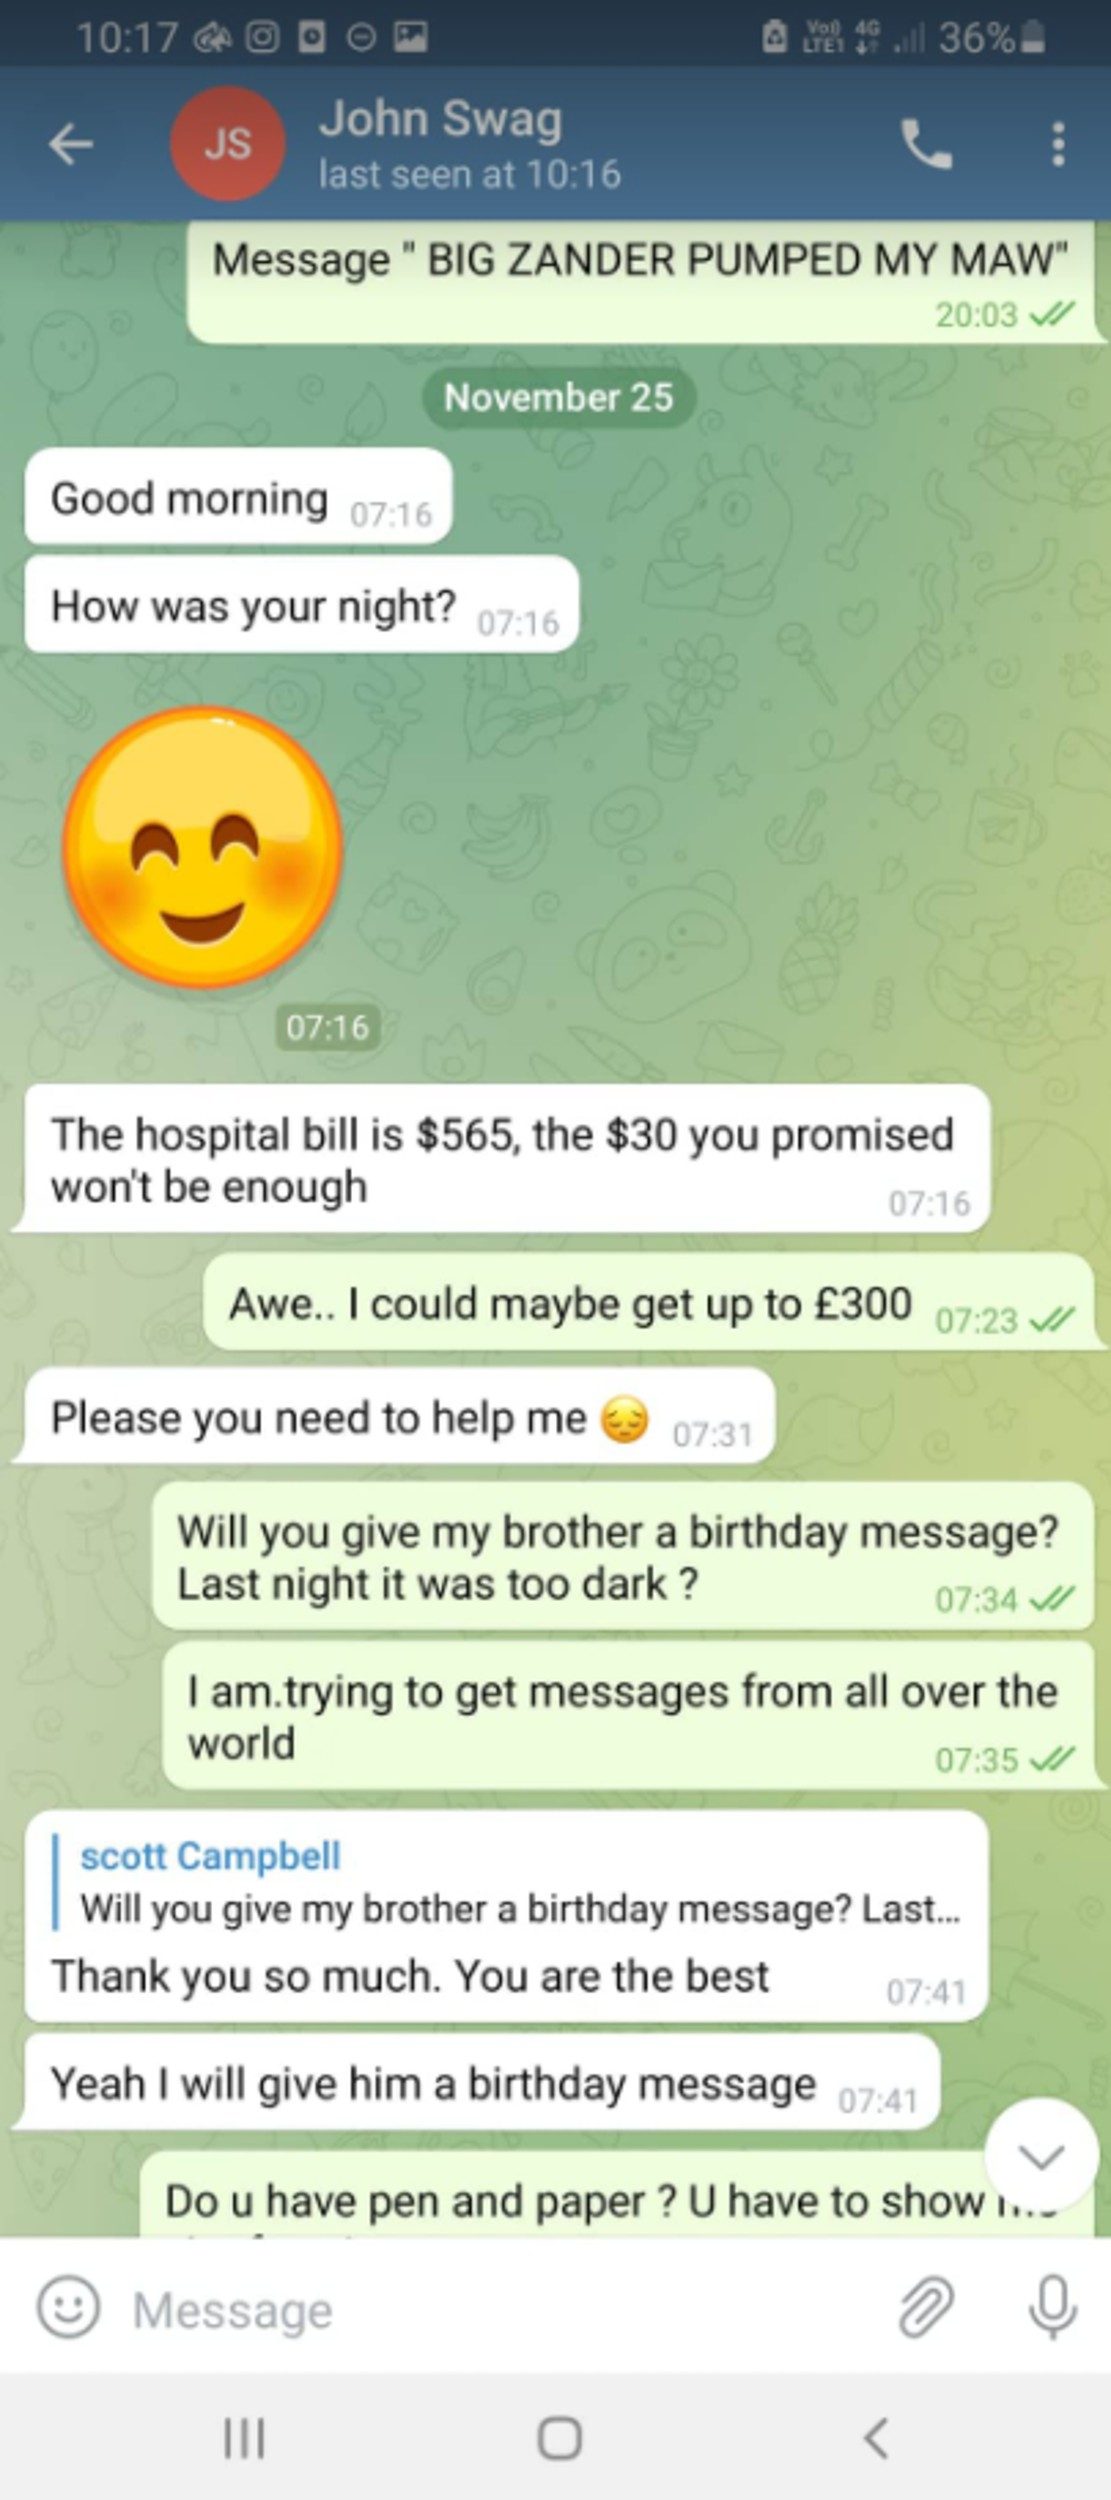 WhatsApp messages were sent between Scott and John